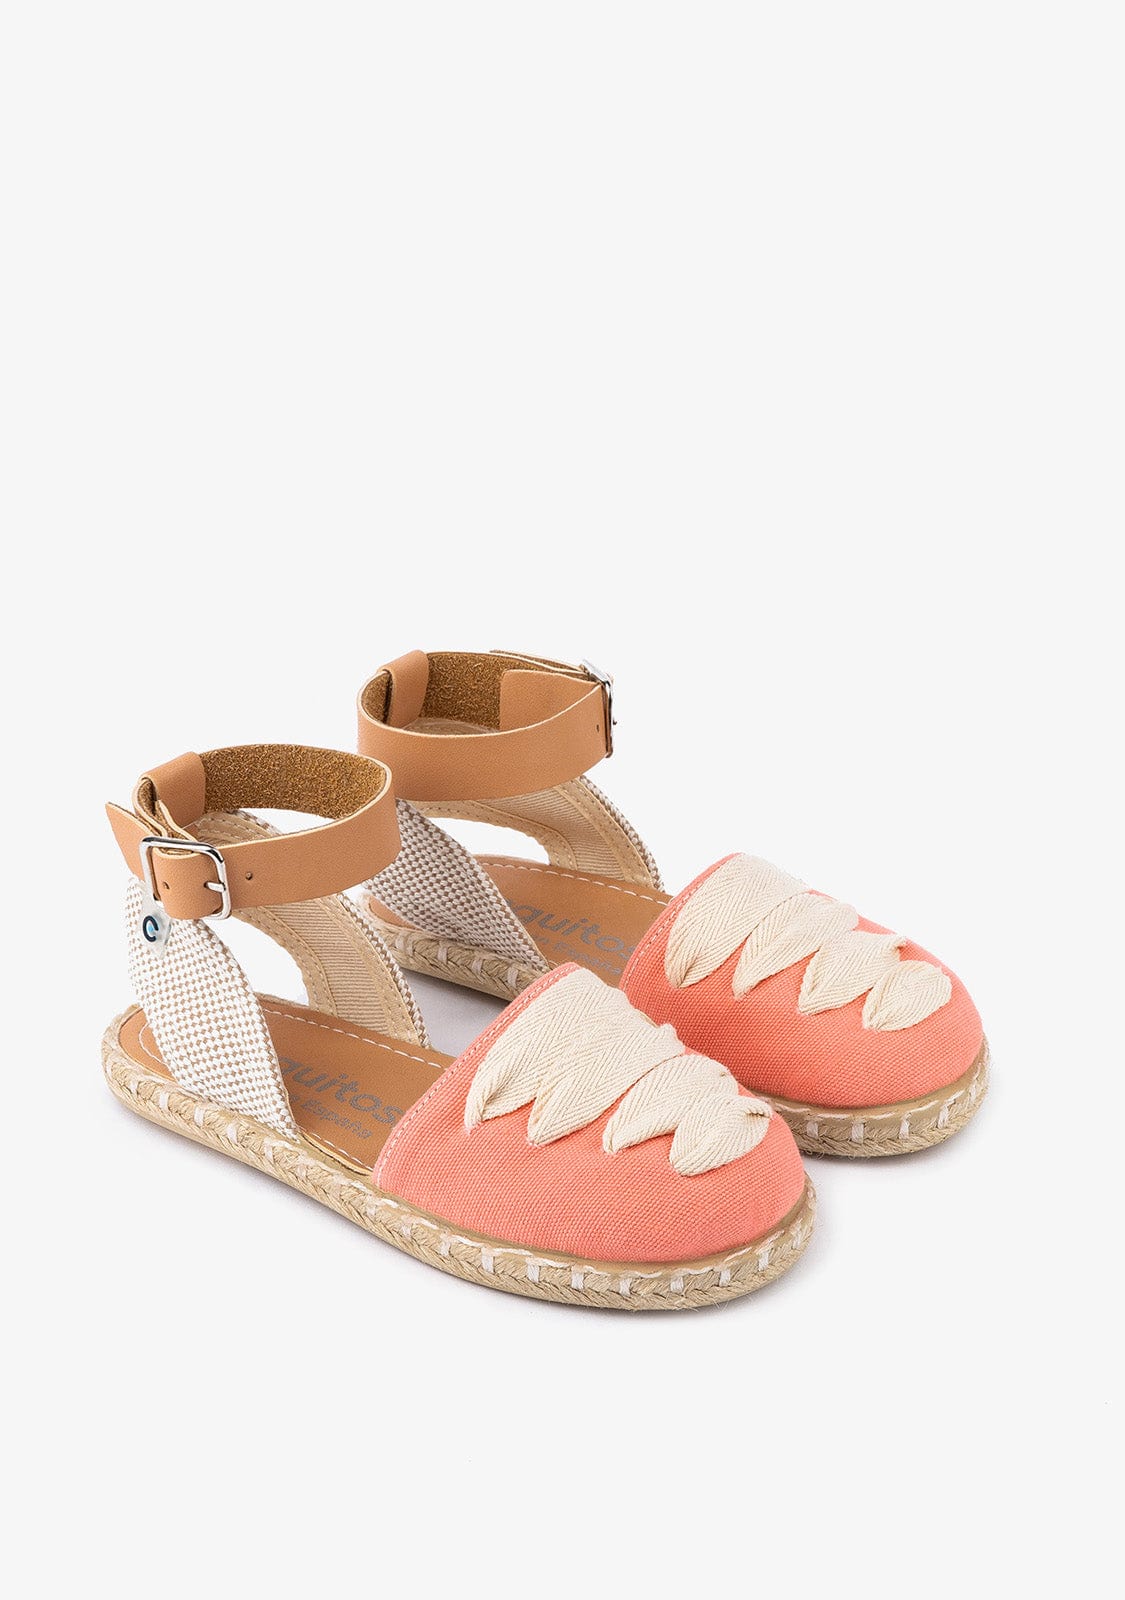 CONGUITOS Shoes Girl's Coral Laces Espadrilles